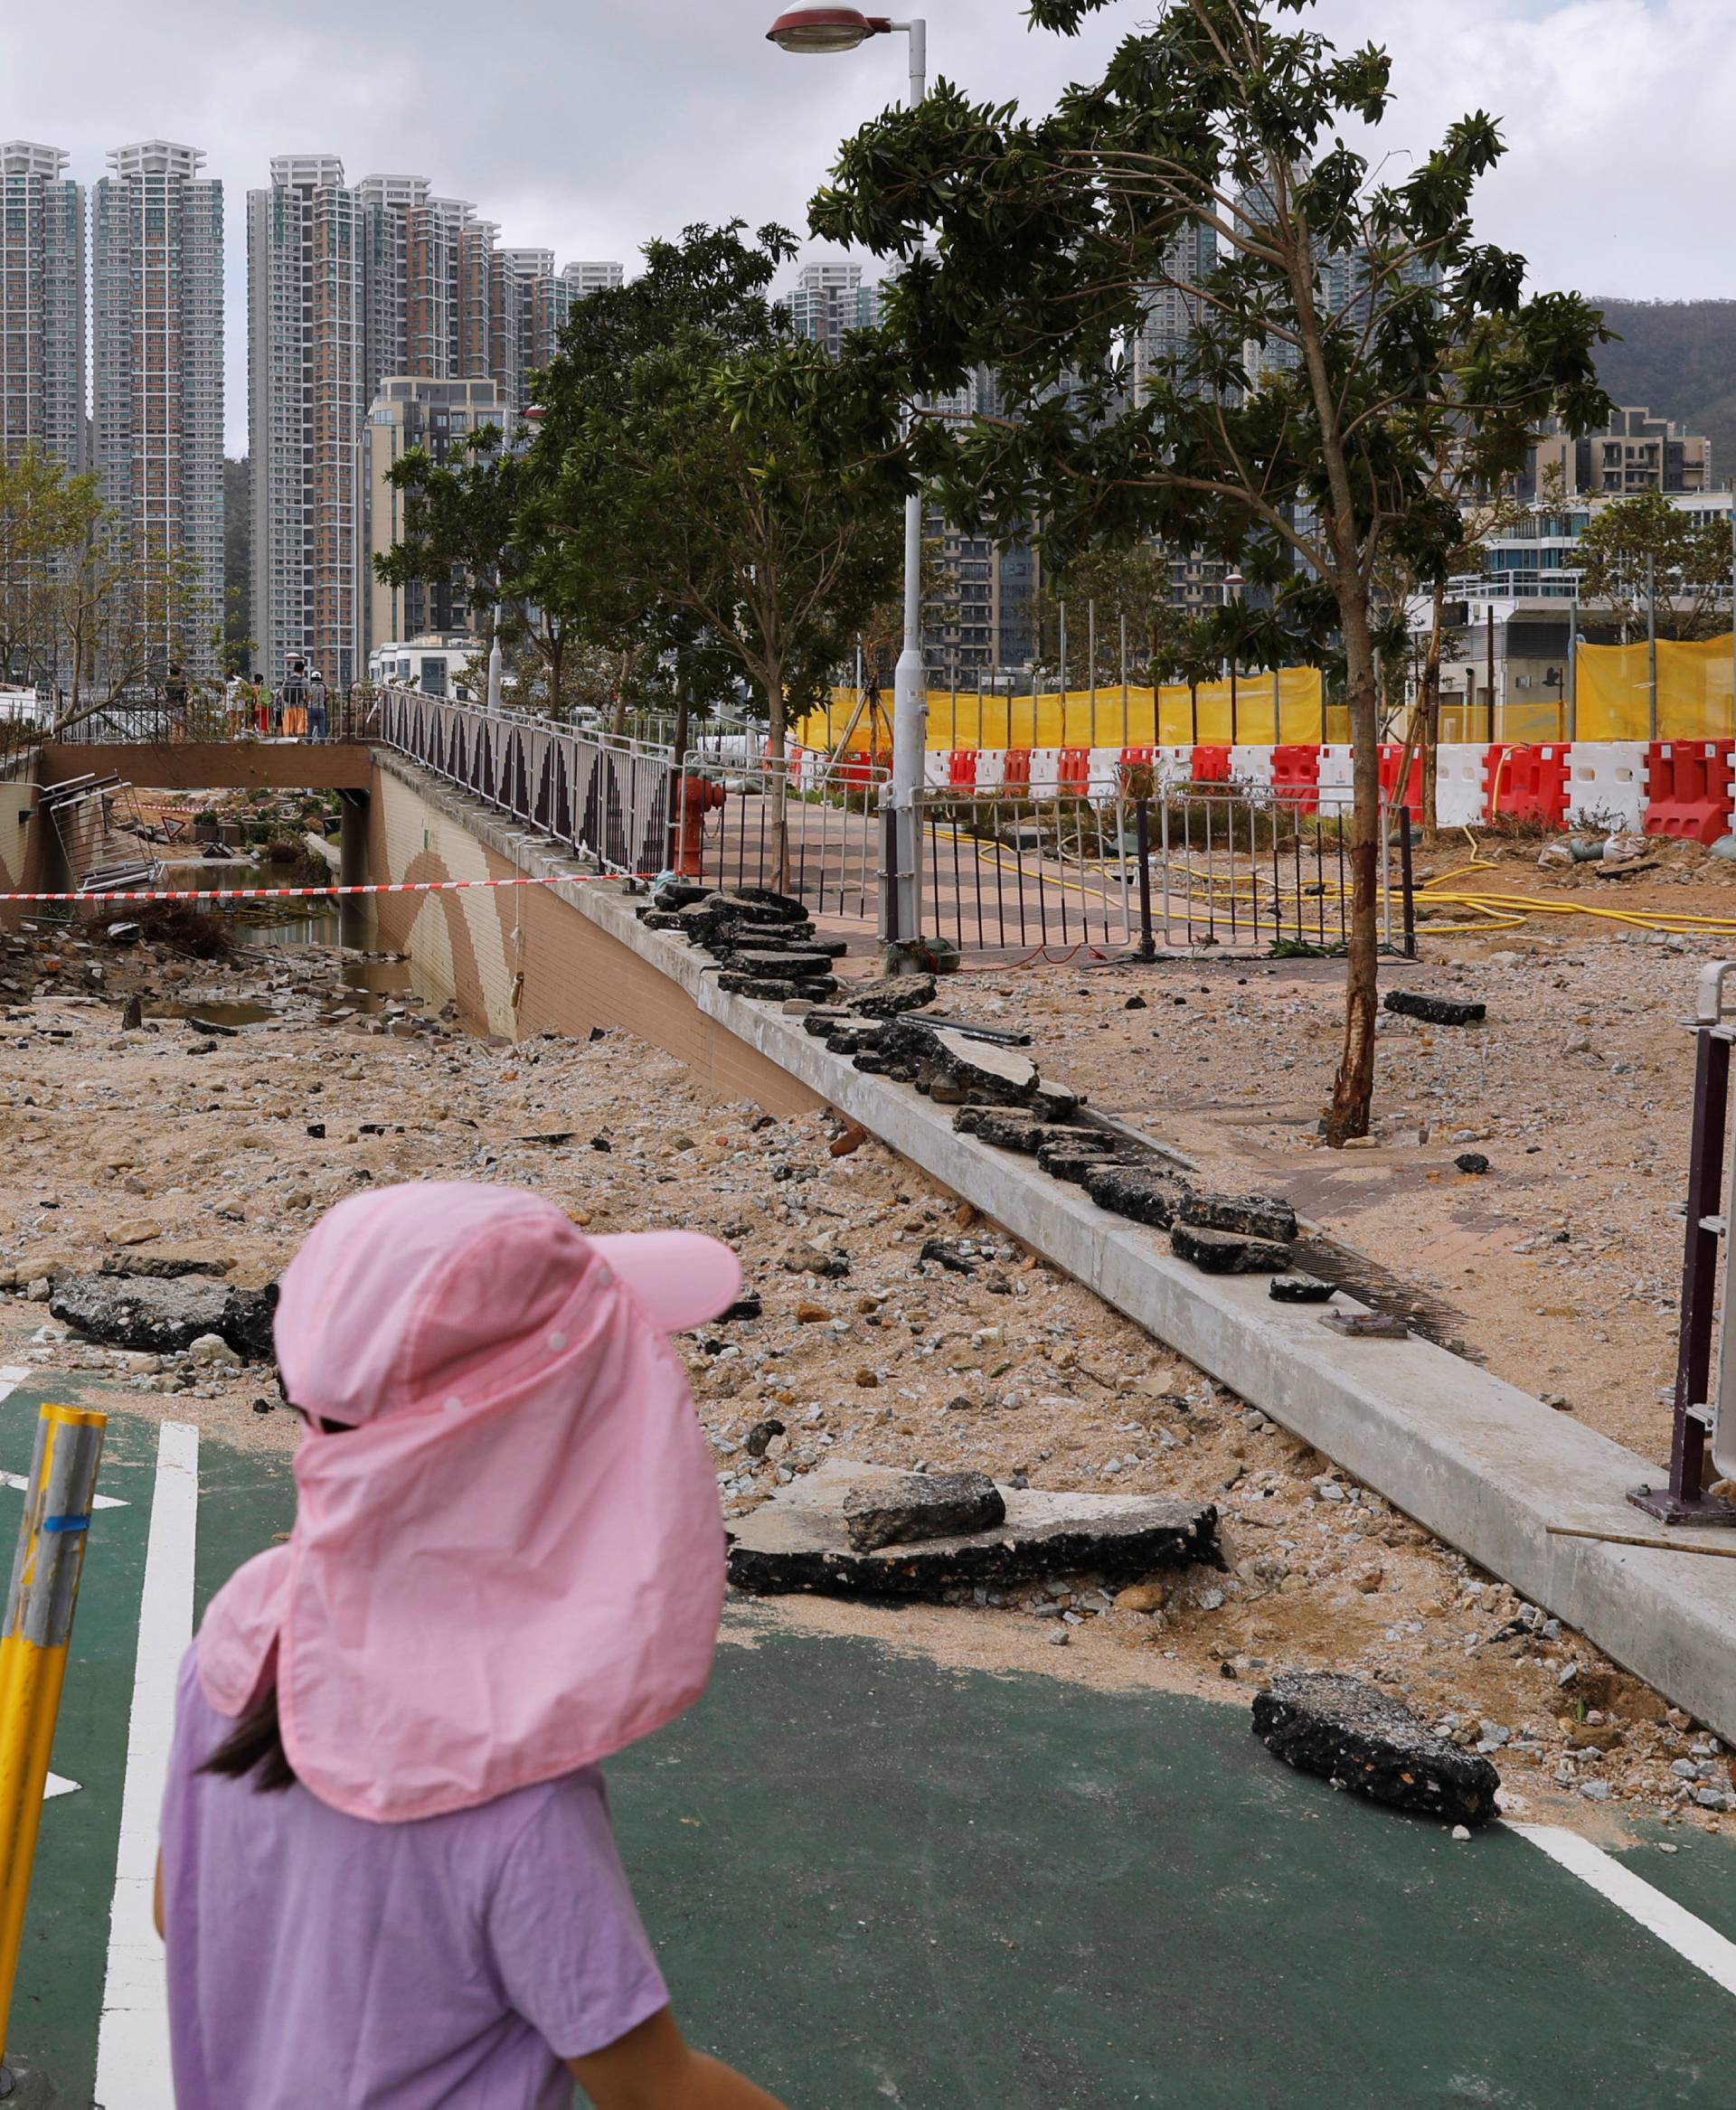 Children walk through a damaged path after Super Typhoon Mangkhut hit Hong Kong